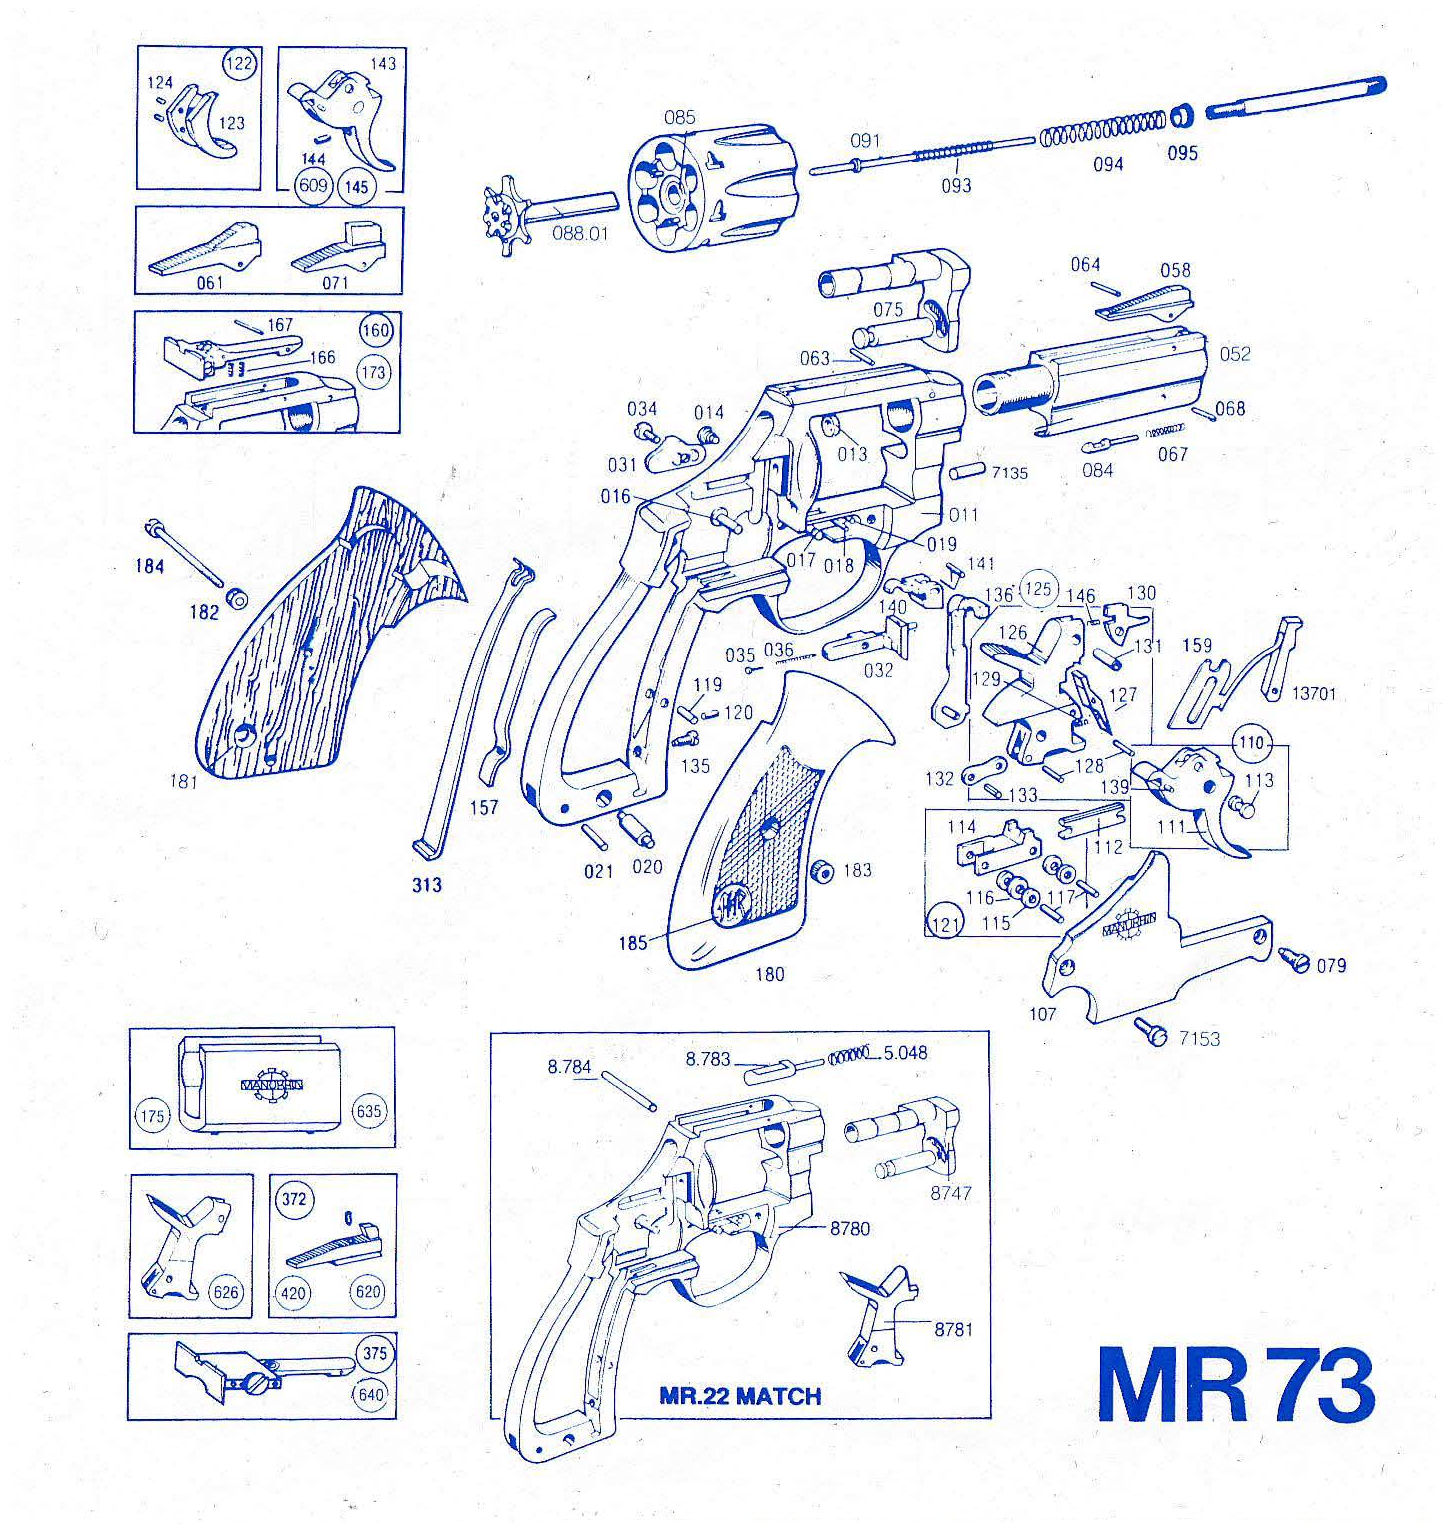 Manurhin MR73 calibre 38SP - 357 Magnum  Pièces détachées - éclaté